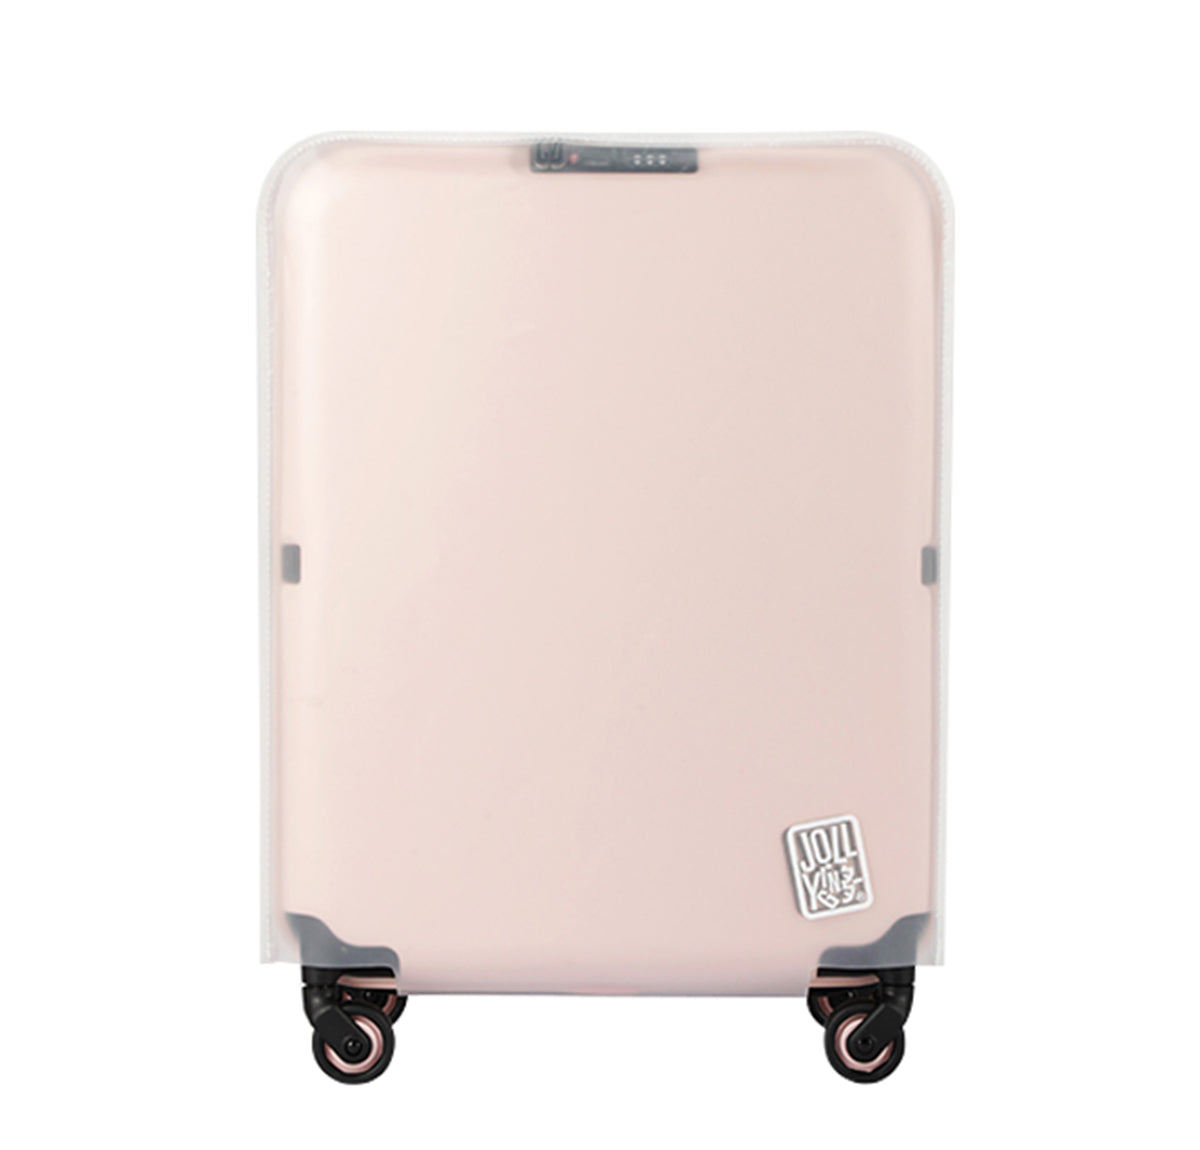 PEBBLE Luggage waterproof cover